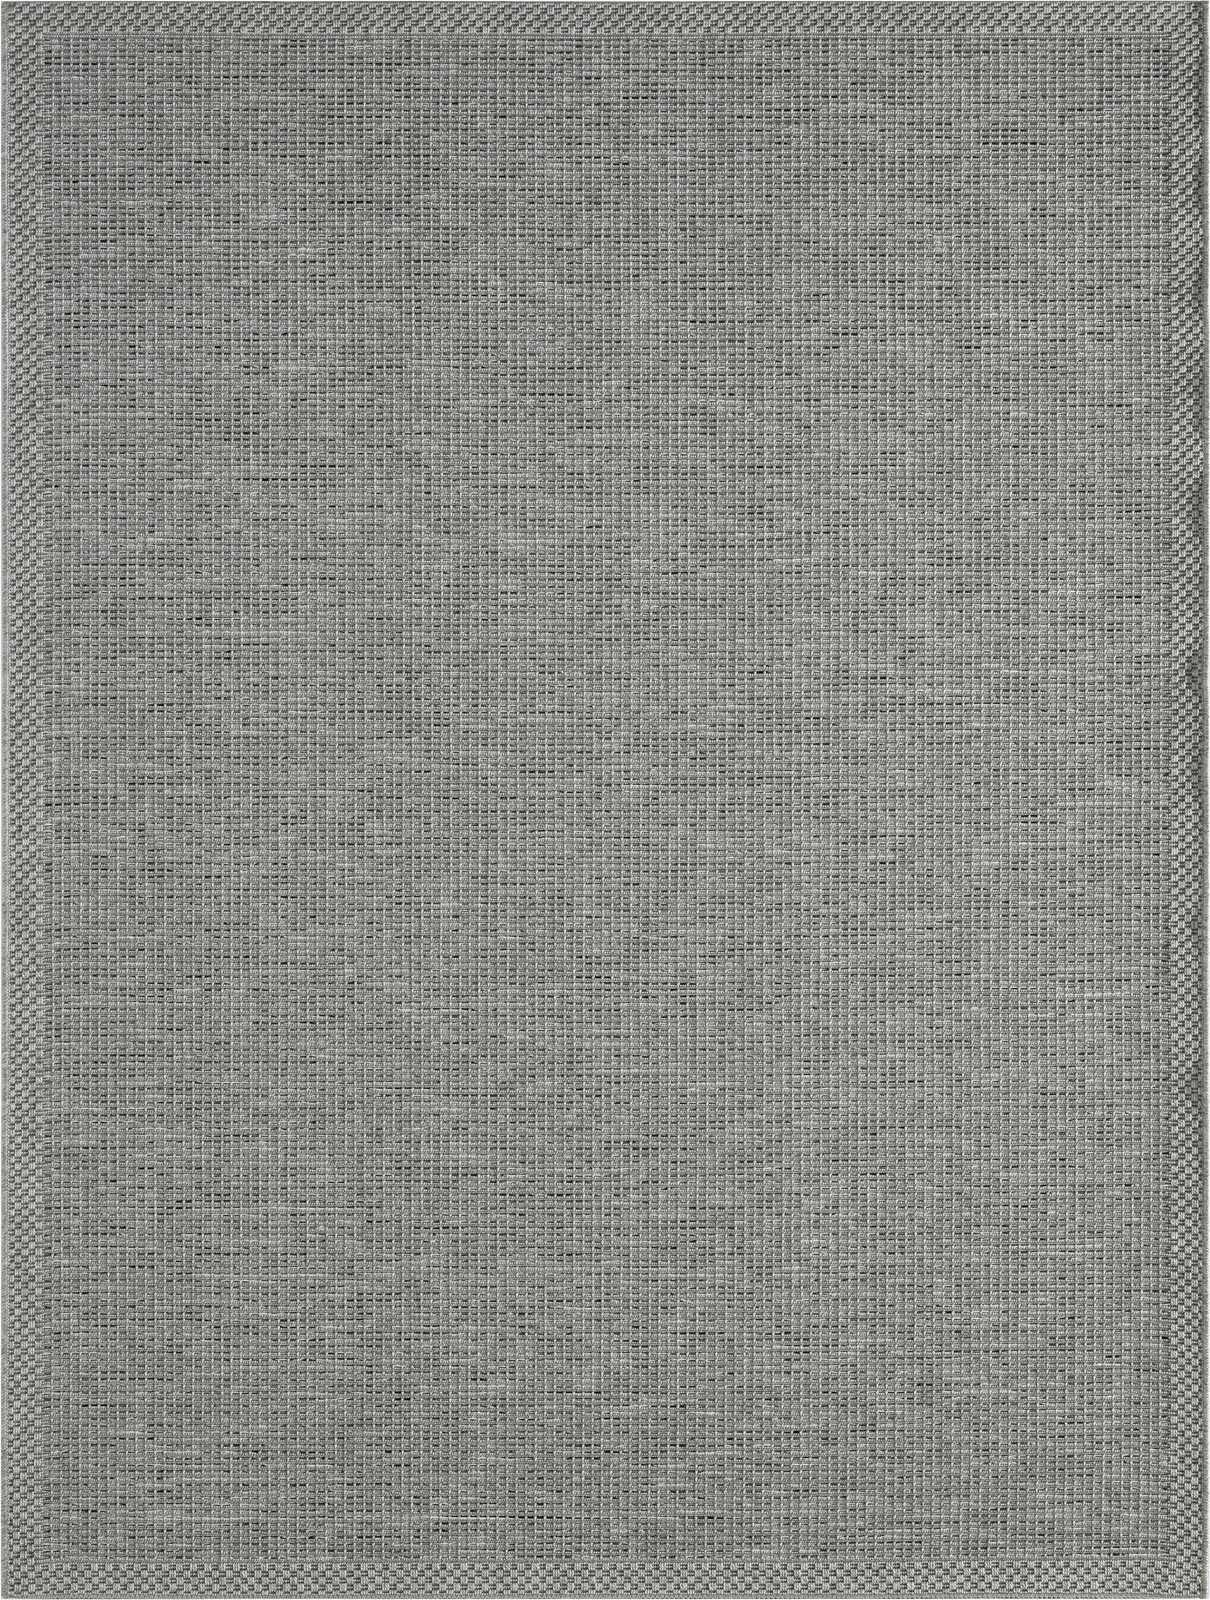             Eenvoudig vloerkleed voor buiten in grijs - 150 x 80 cm
        